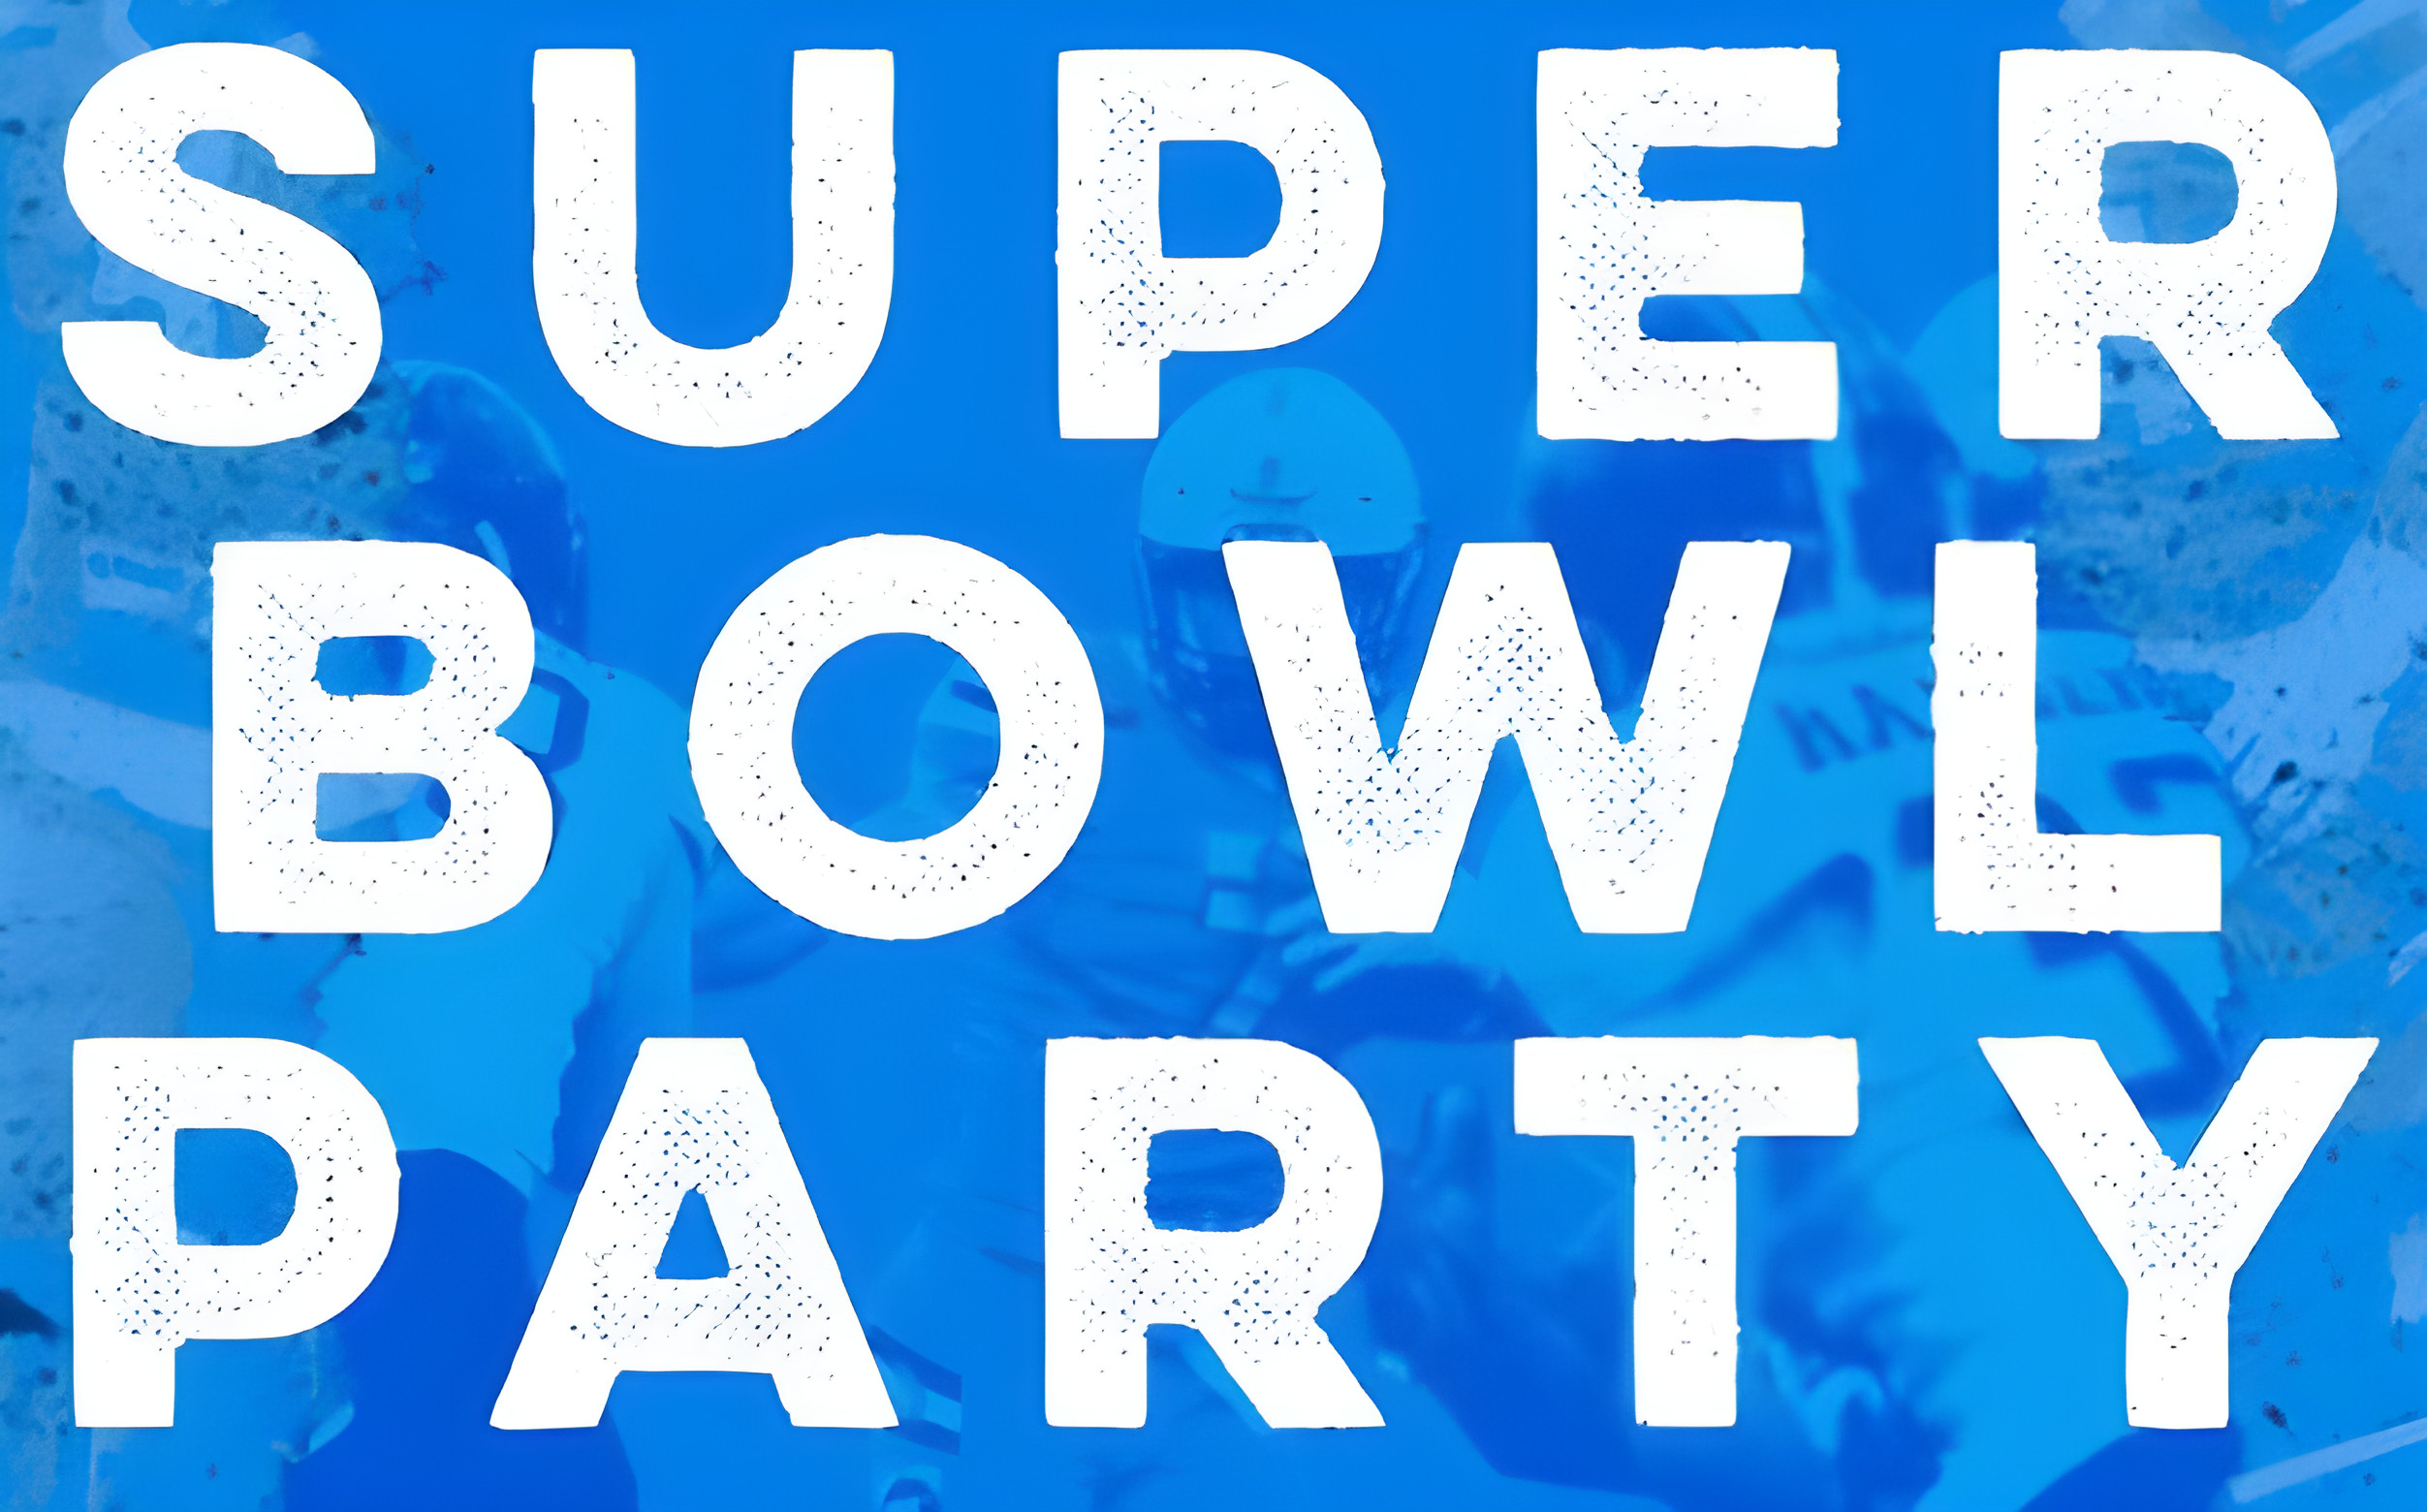 FootballR - NFL - Eine Super Bowl Party mit blauem Hintergrund.